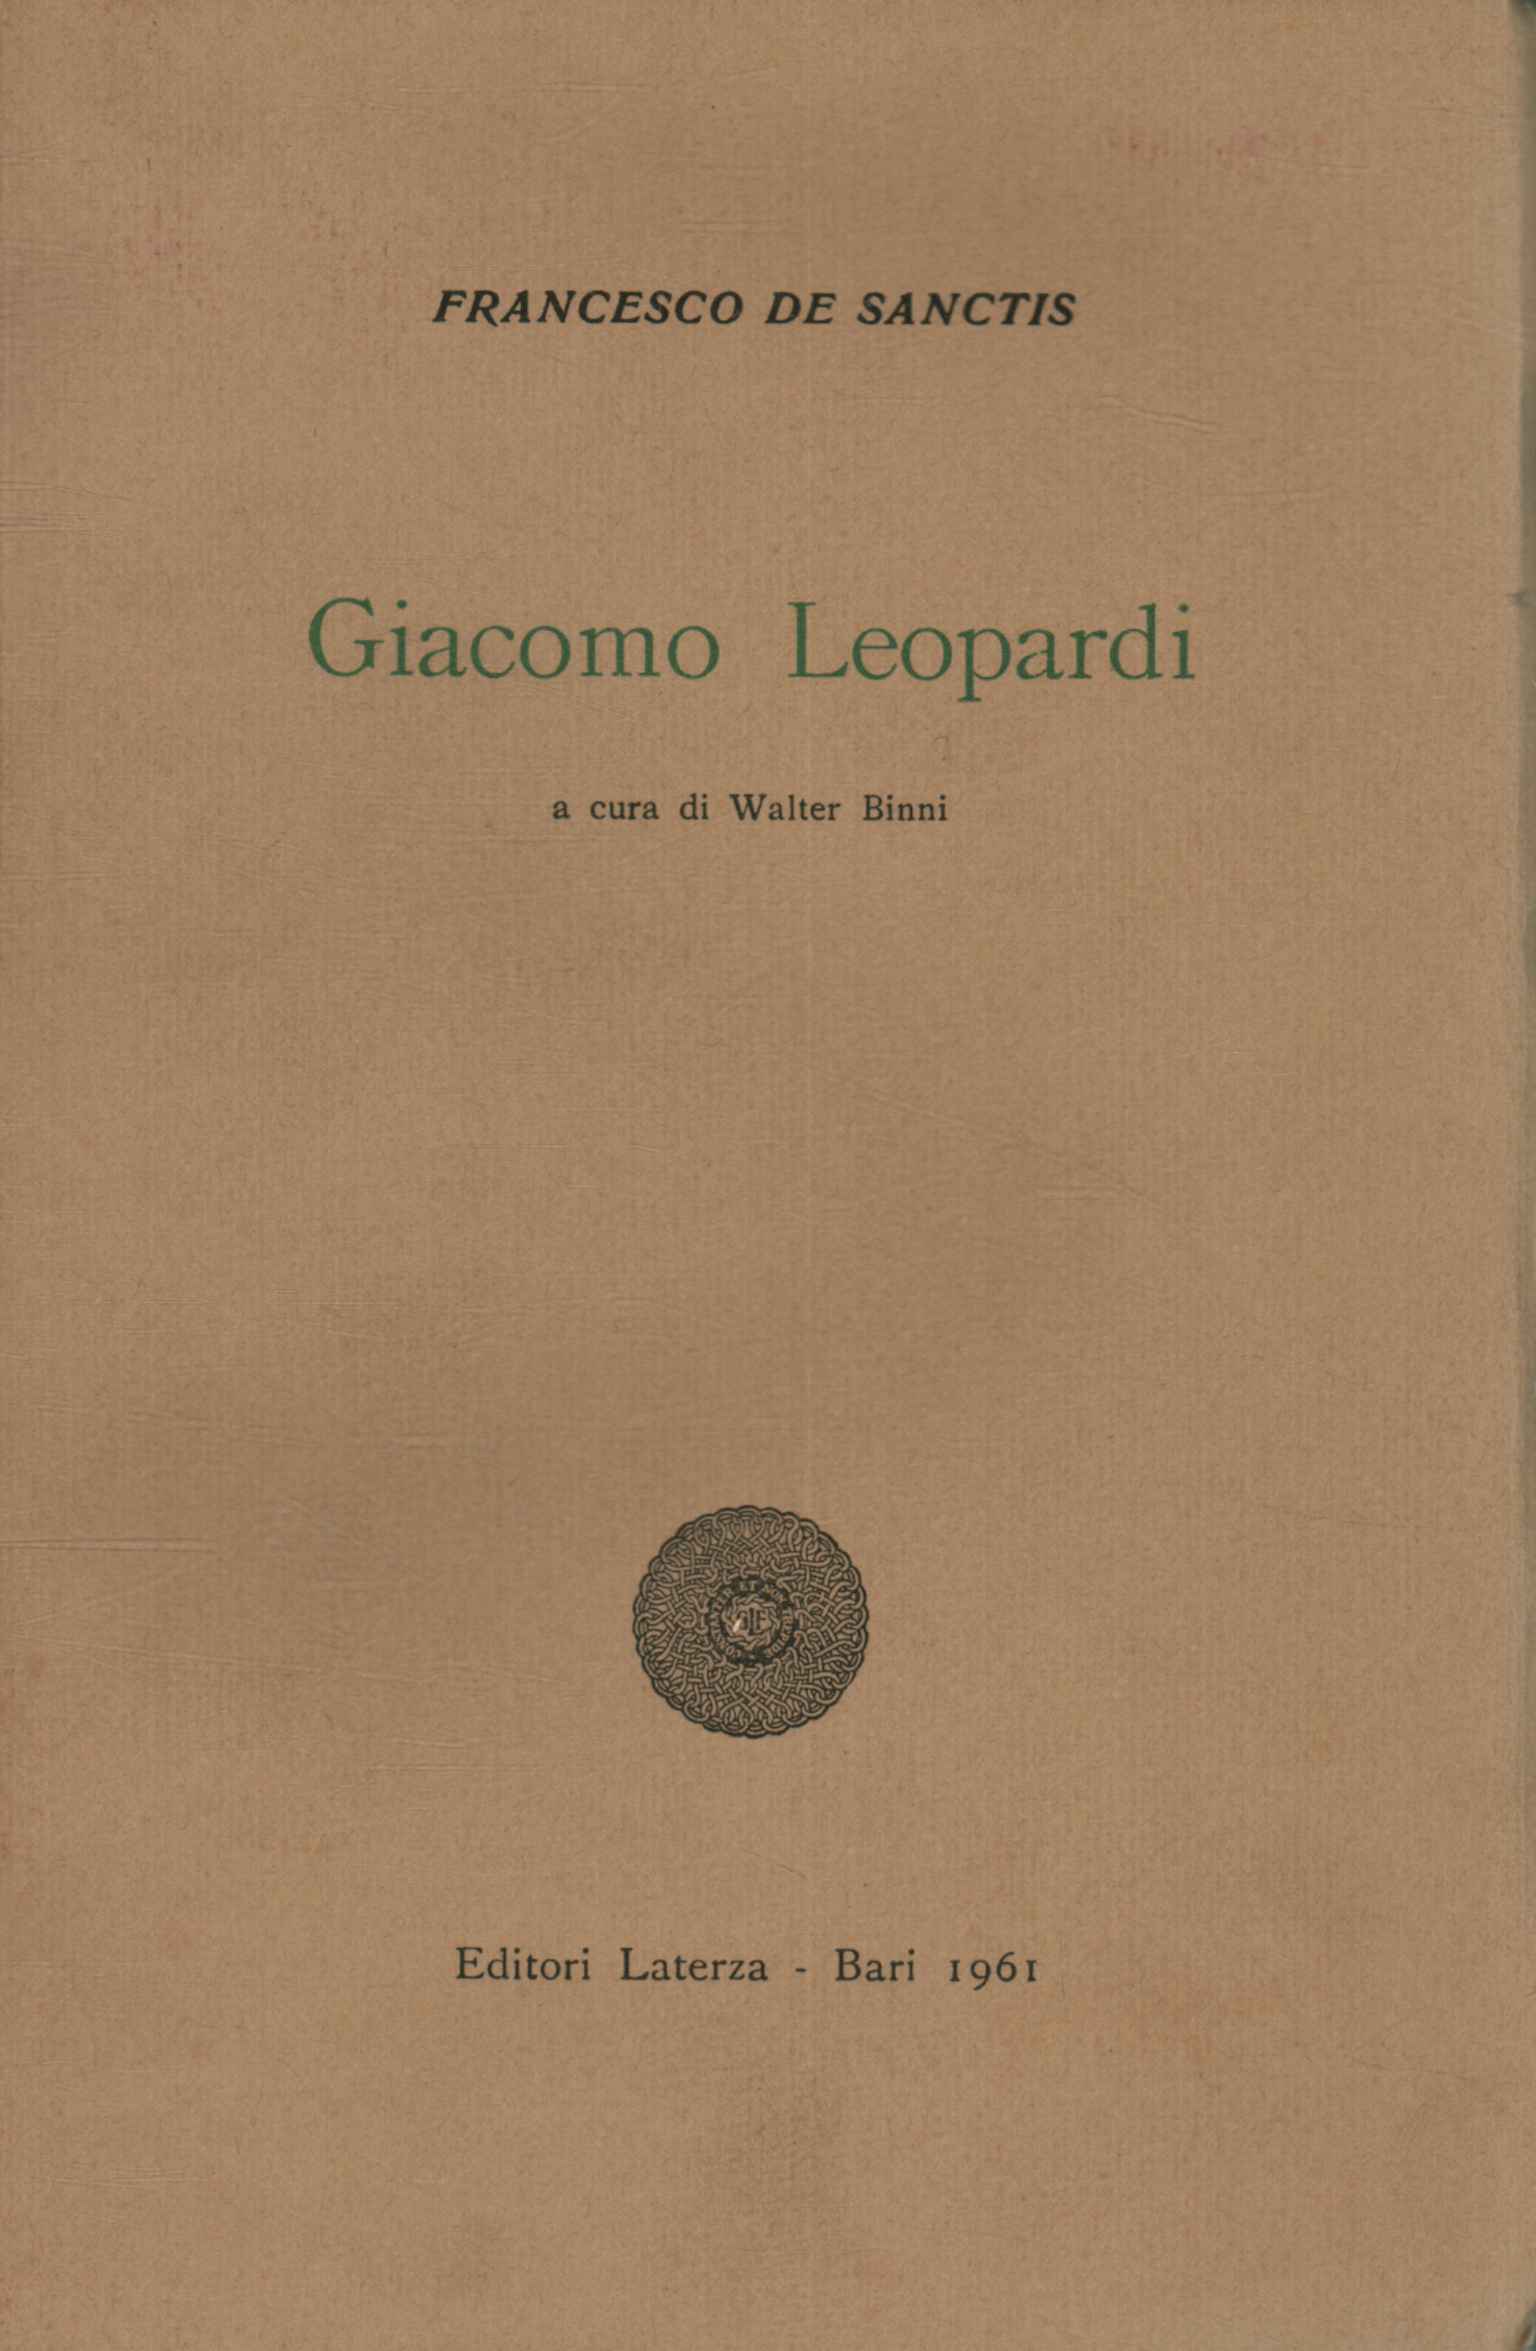 Giacomo Léopardi